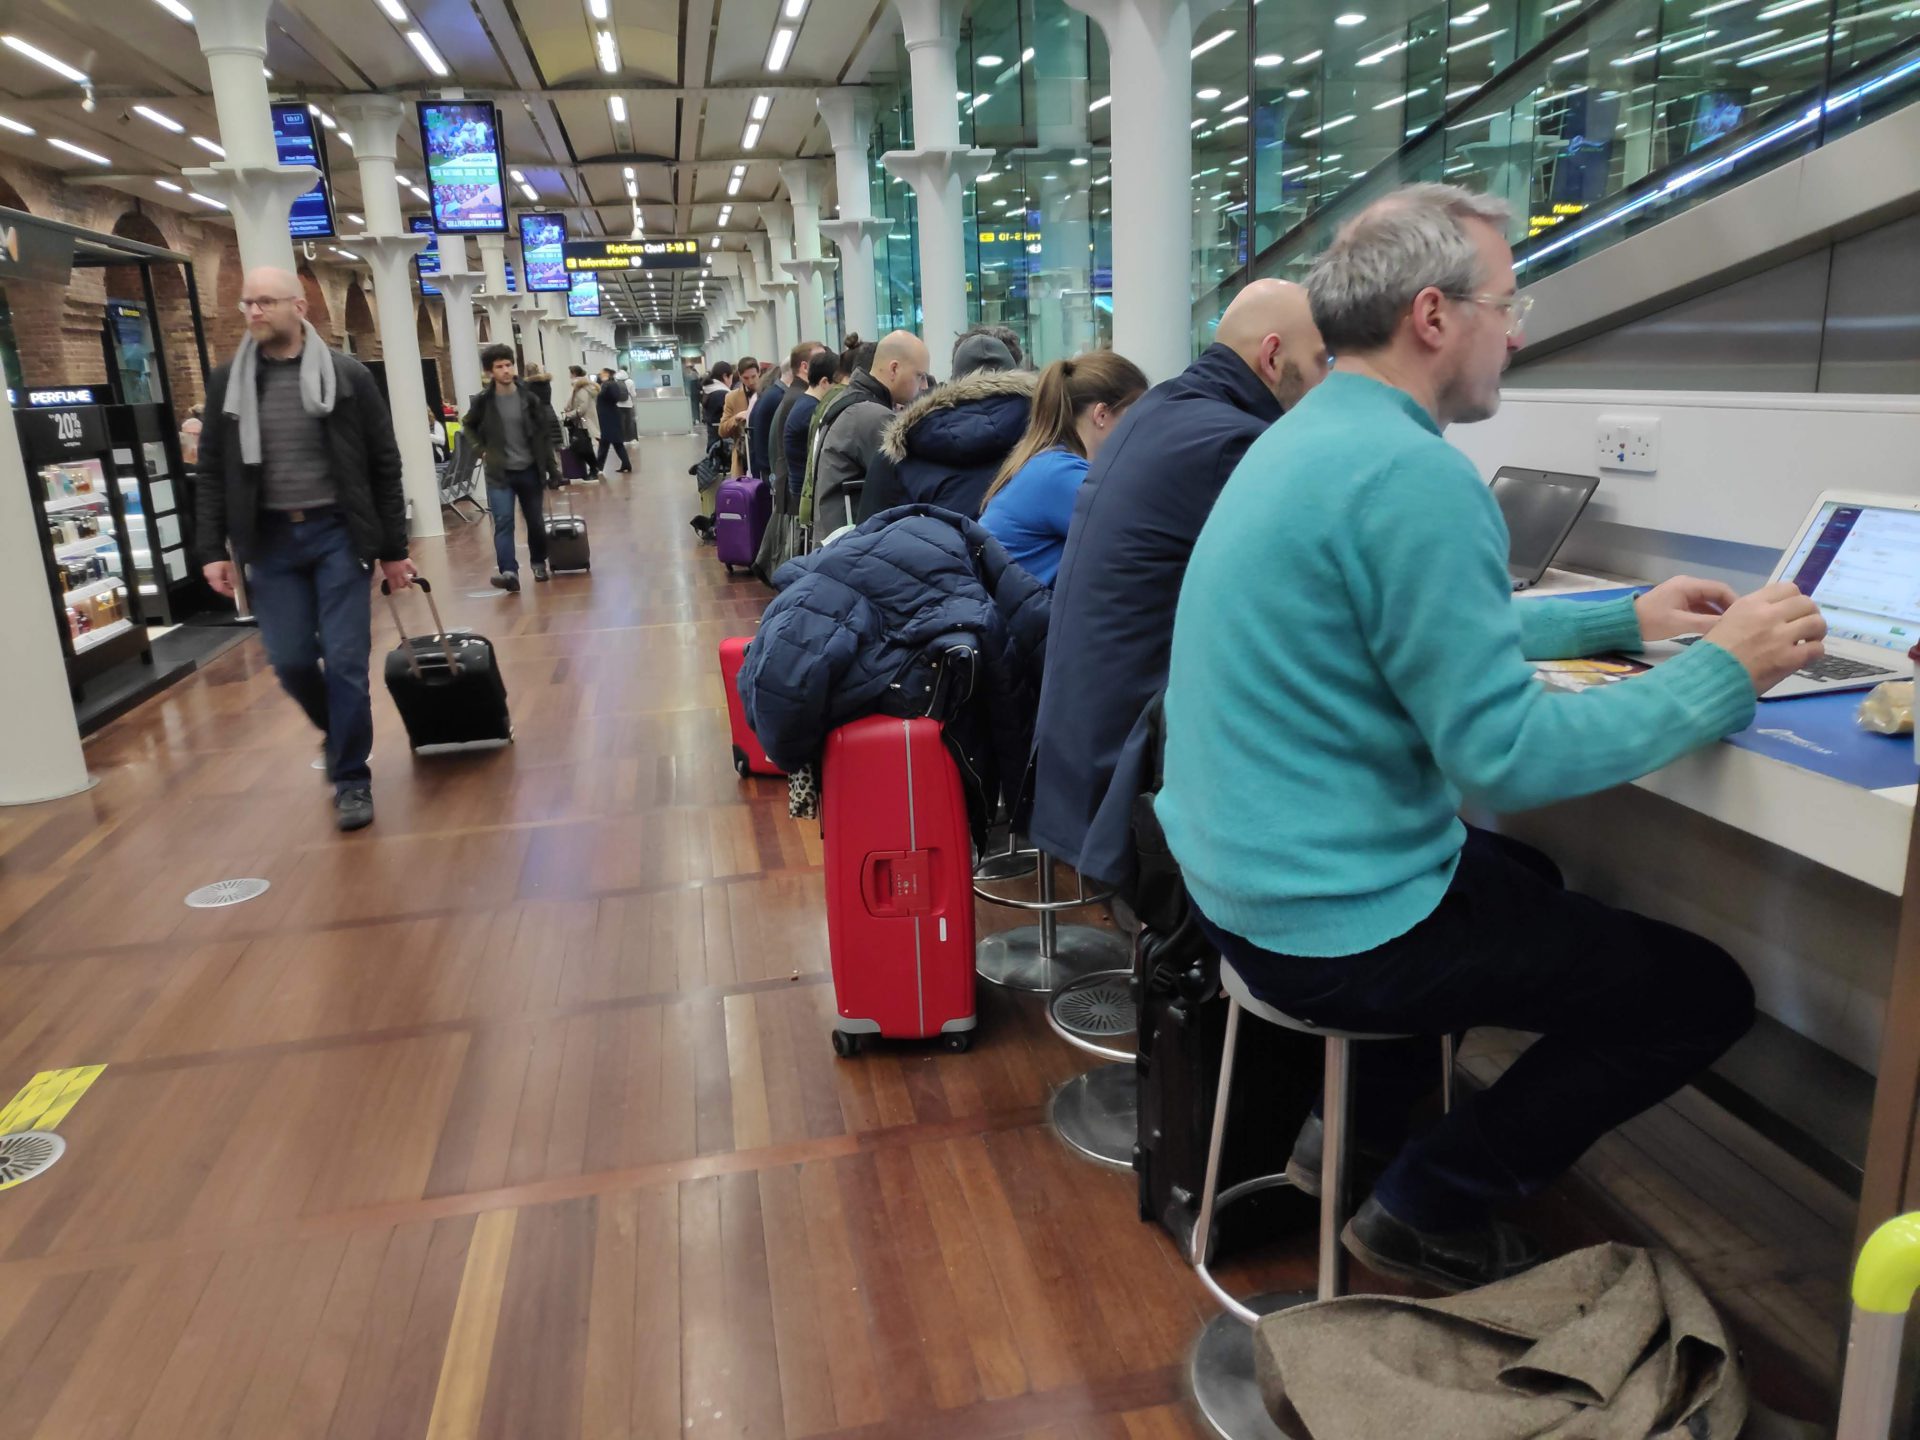 Flexplekken zat voor wachtende reizigers op station St Pancras in Londen.  